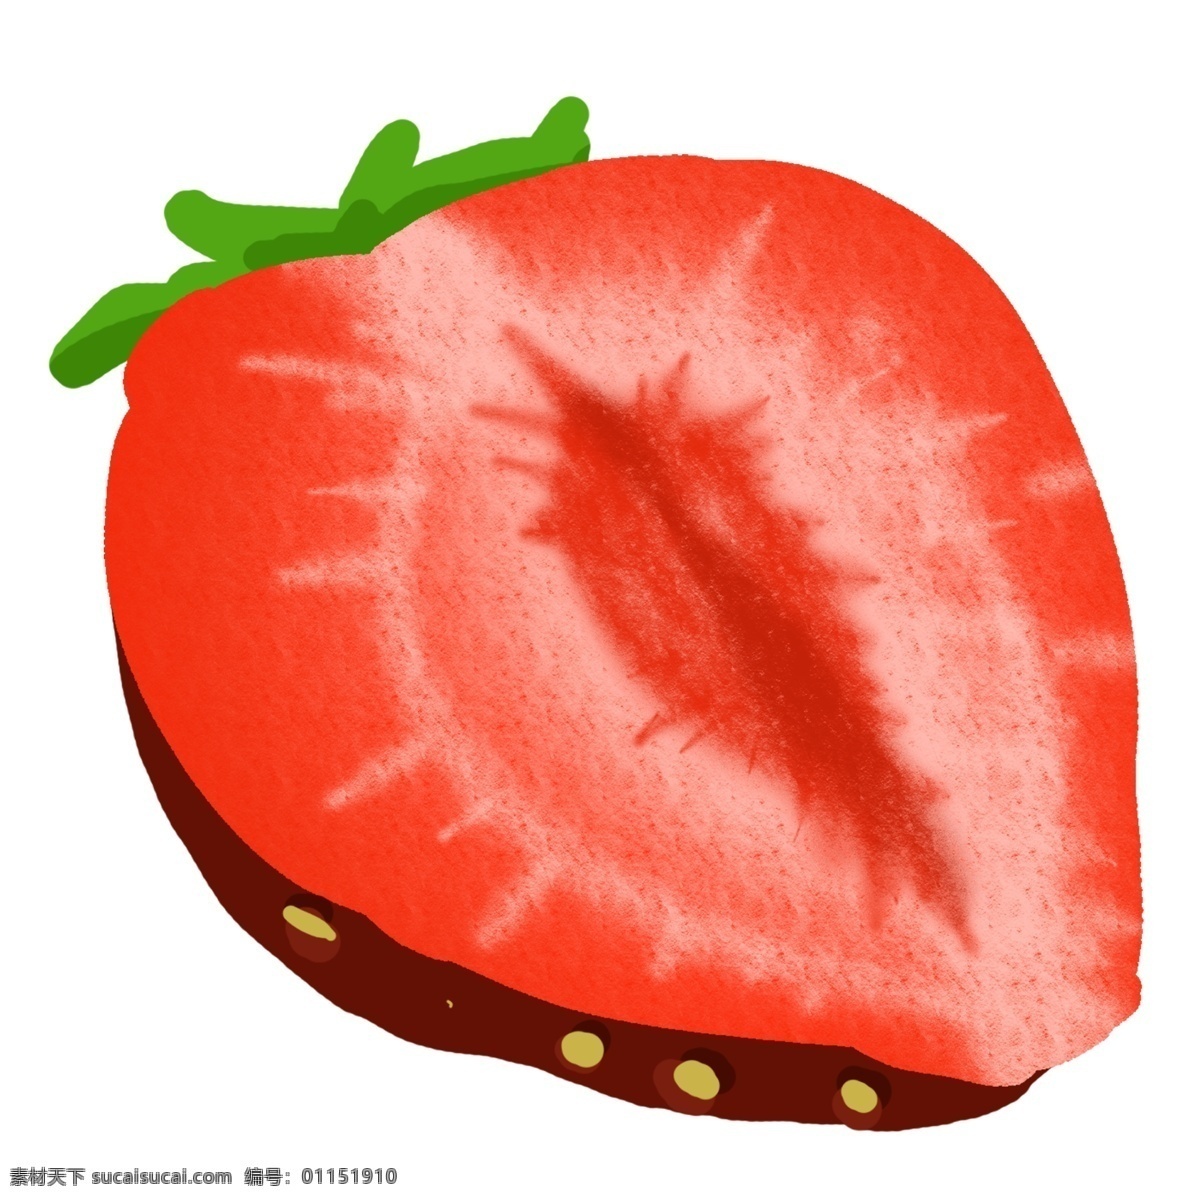 手绘 半 块 草莓 插画 手绘红色草莓 半块草莓 美味的草莓 手绘水果 美食 甜品 草莓插画 卡通草莓